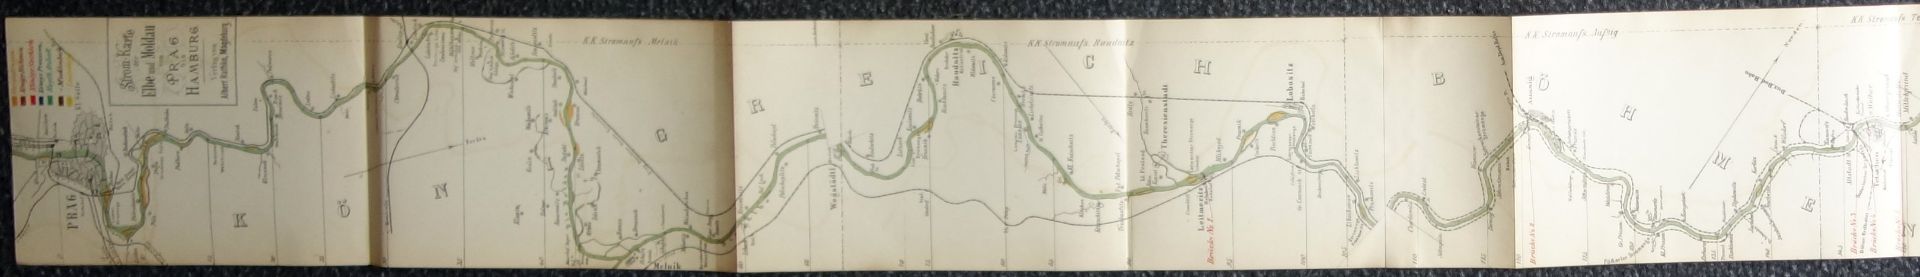 Stromkarte der Elbe und Moldau von Prag bis Hamburg, W.Platt, 1889 - Image 7 of 7